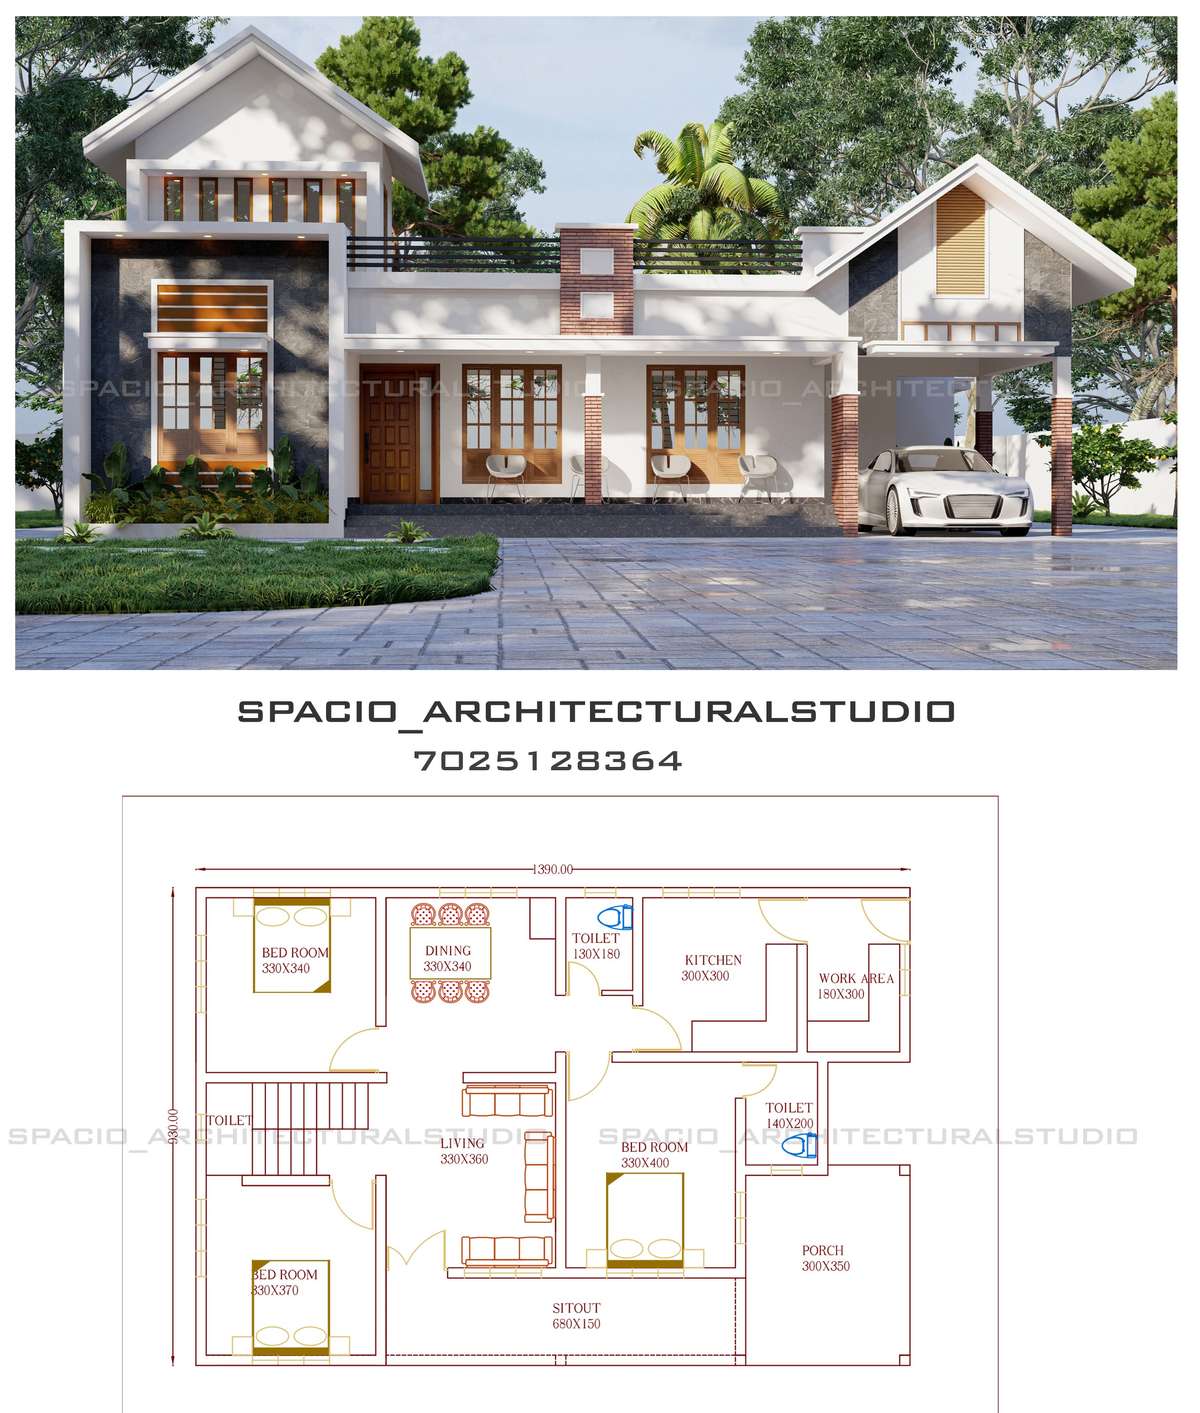 Designs by Architect spacio architecturalstudio, Malappuram | Kolo